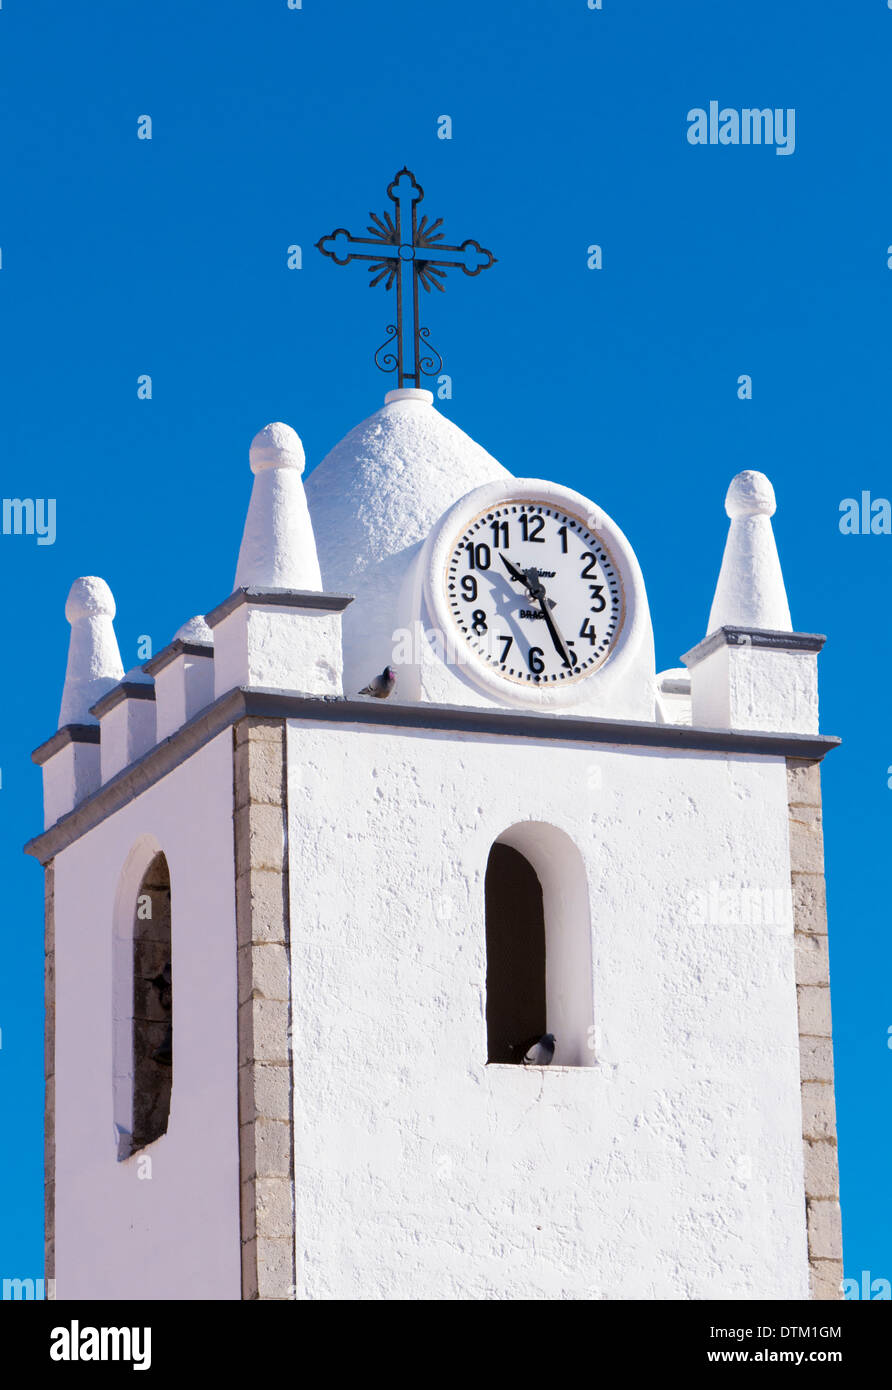 Clock and bell tower, Igreja de Nossa Senhora da Conceicao, Conceicao de Tavira, Algarve, Portugal, February 2014 Stock Photo